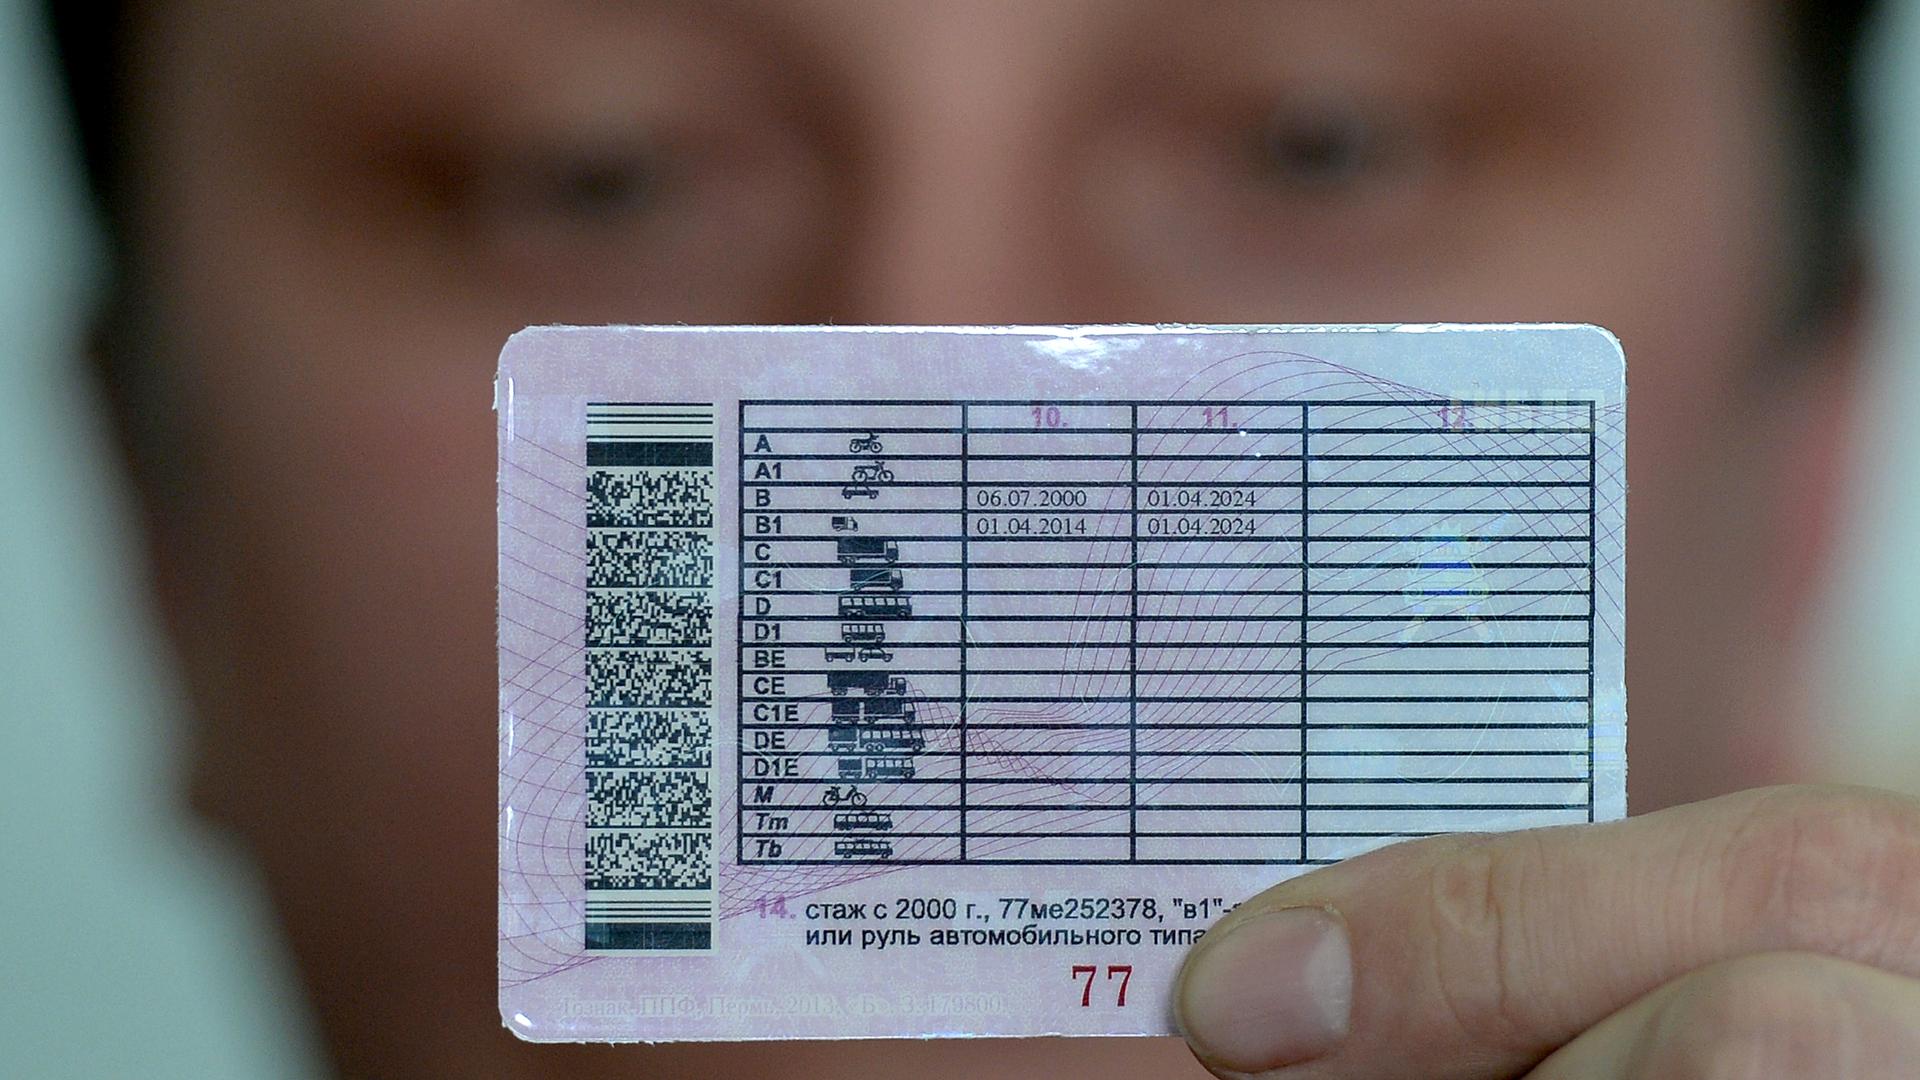 Госдумой в I чтении одобрен проект закона об использовании водительских прав для удалённой идентификации